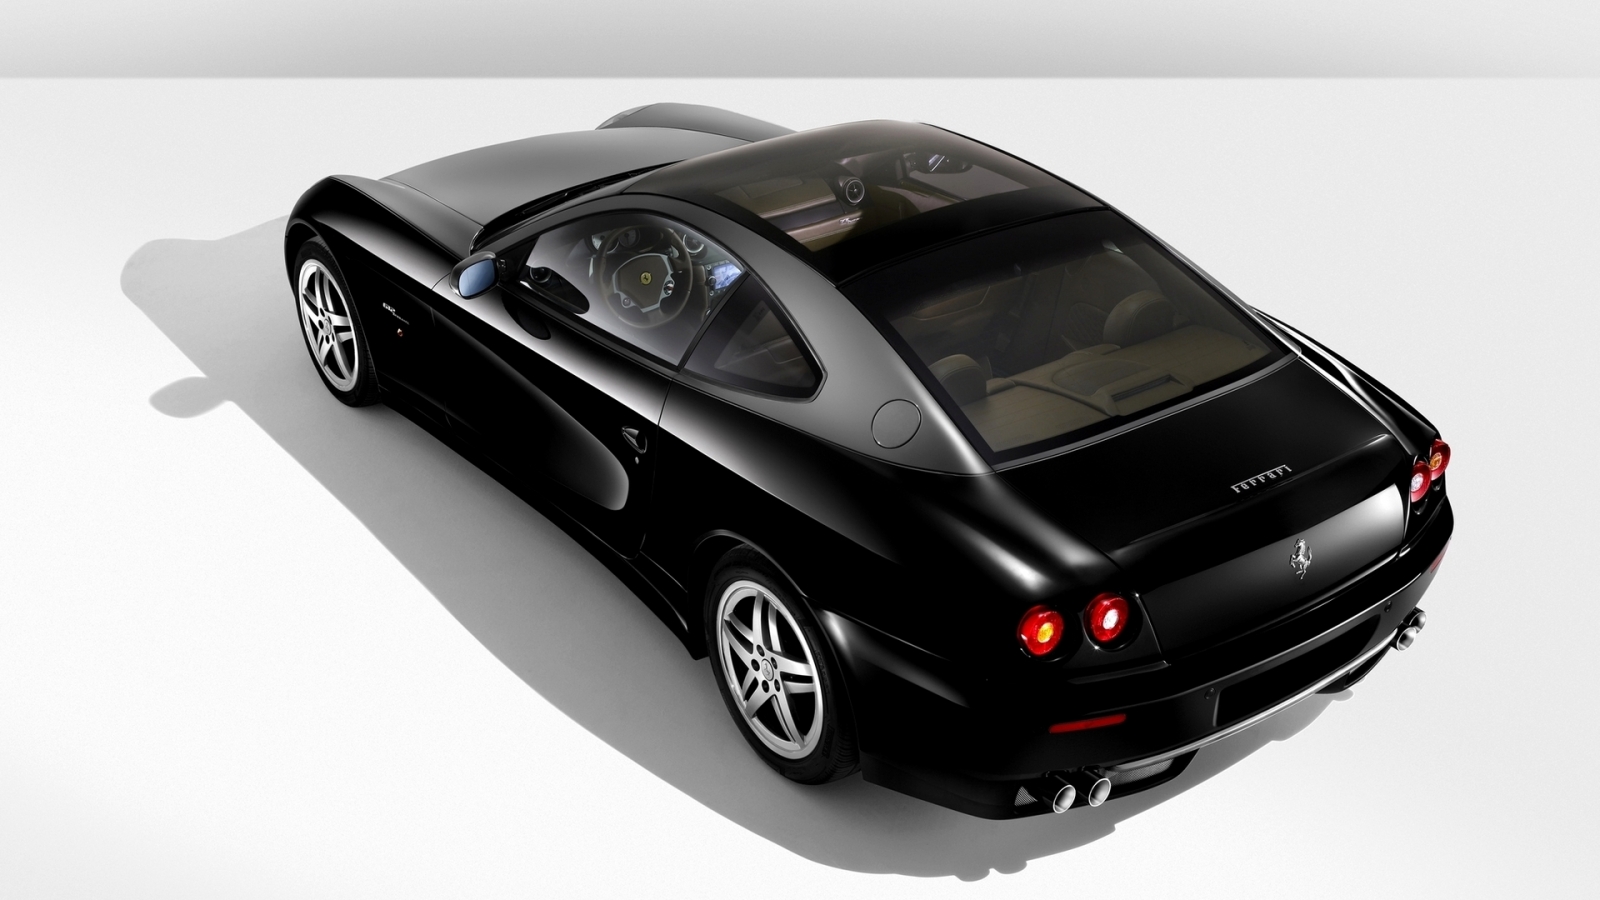 Ferrari 612 Black for 1600 x 900 HDTV resolution